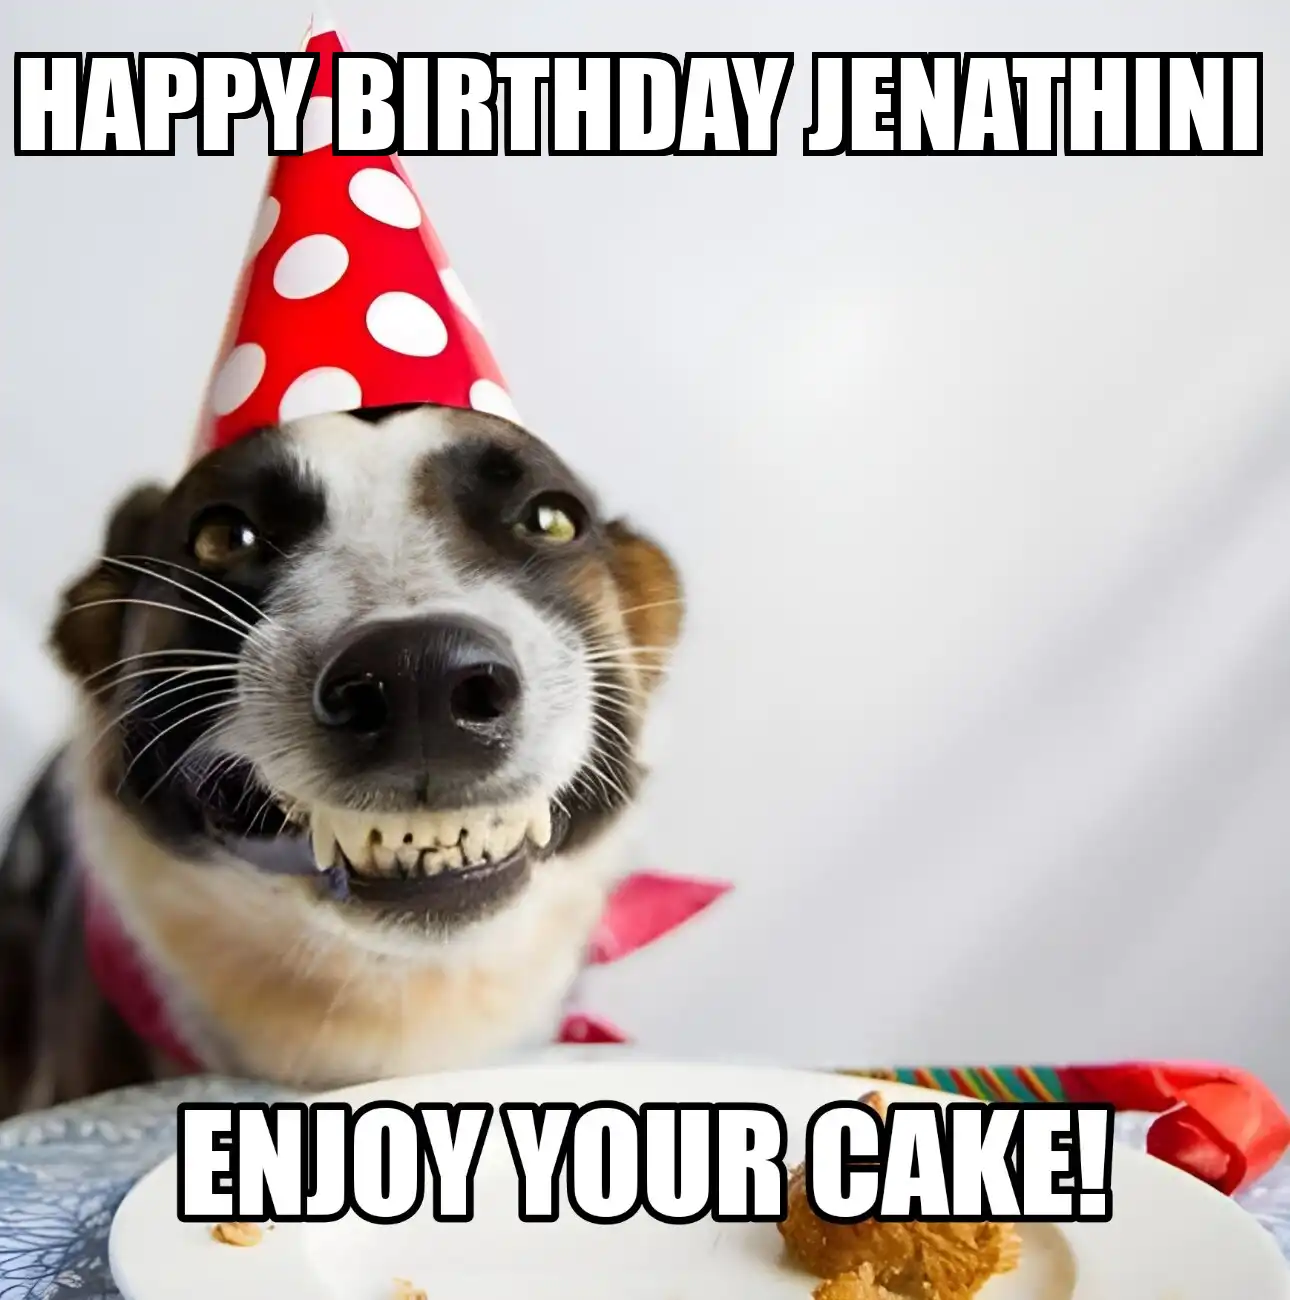 Happy Birthday Jenathini Enjoy Your Cake Dog Meme